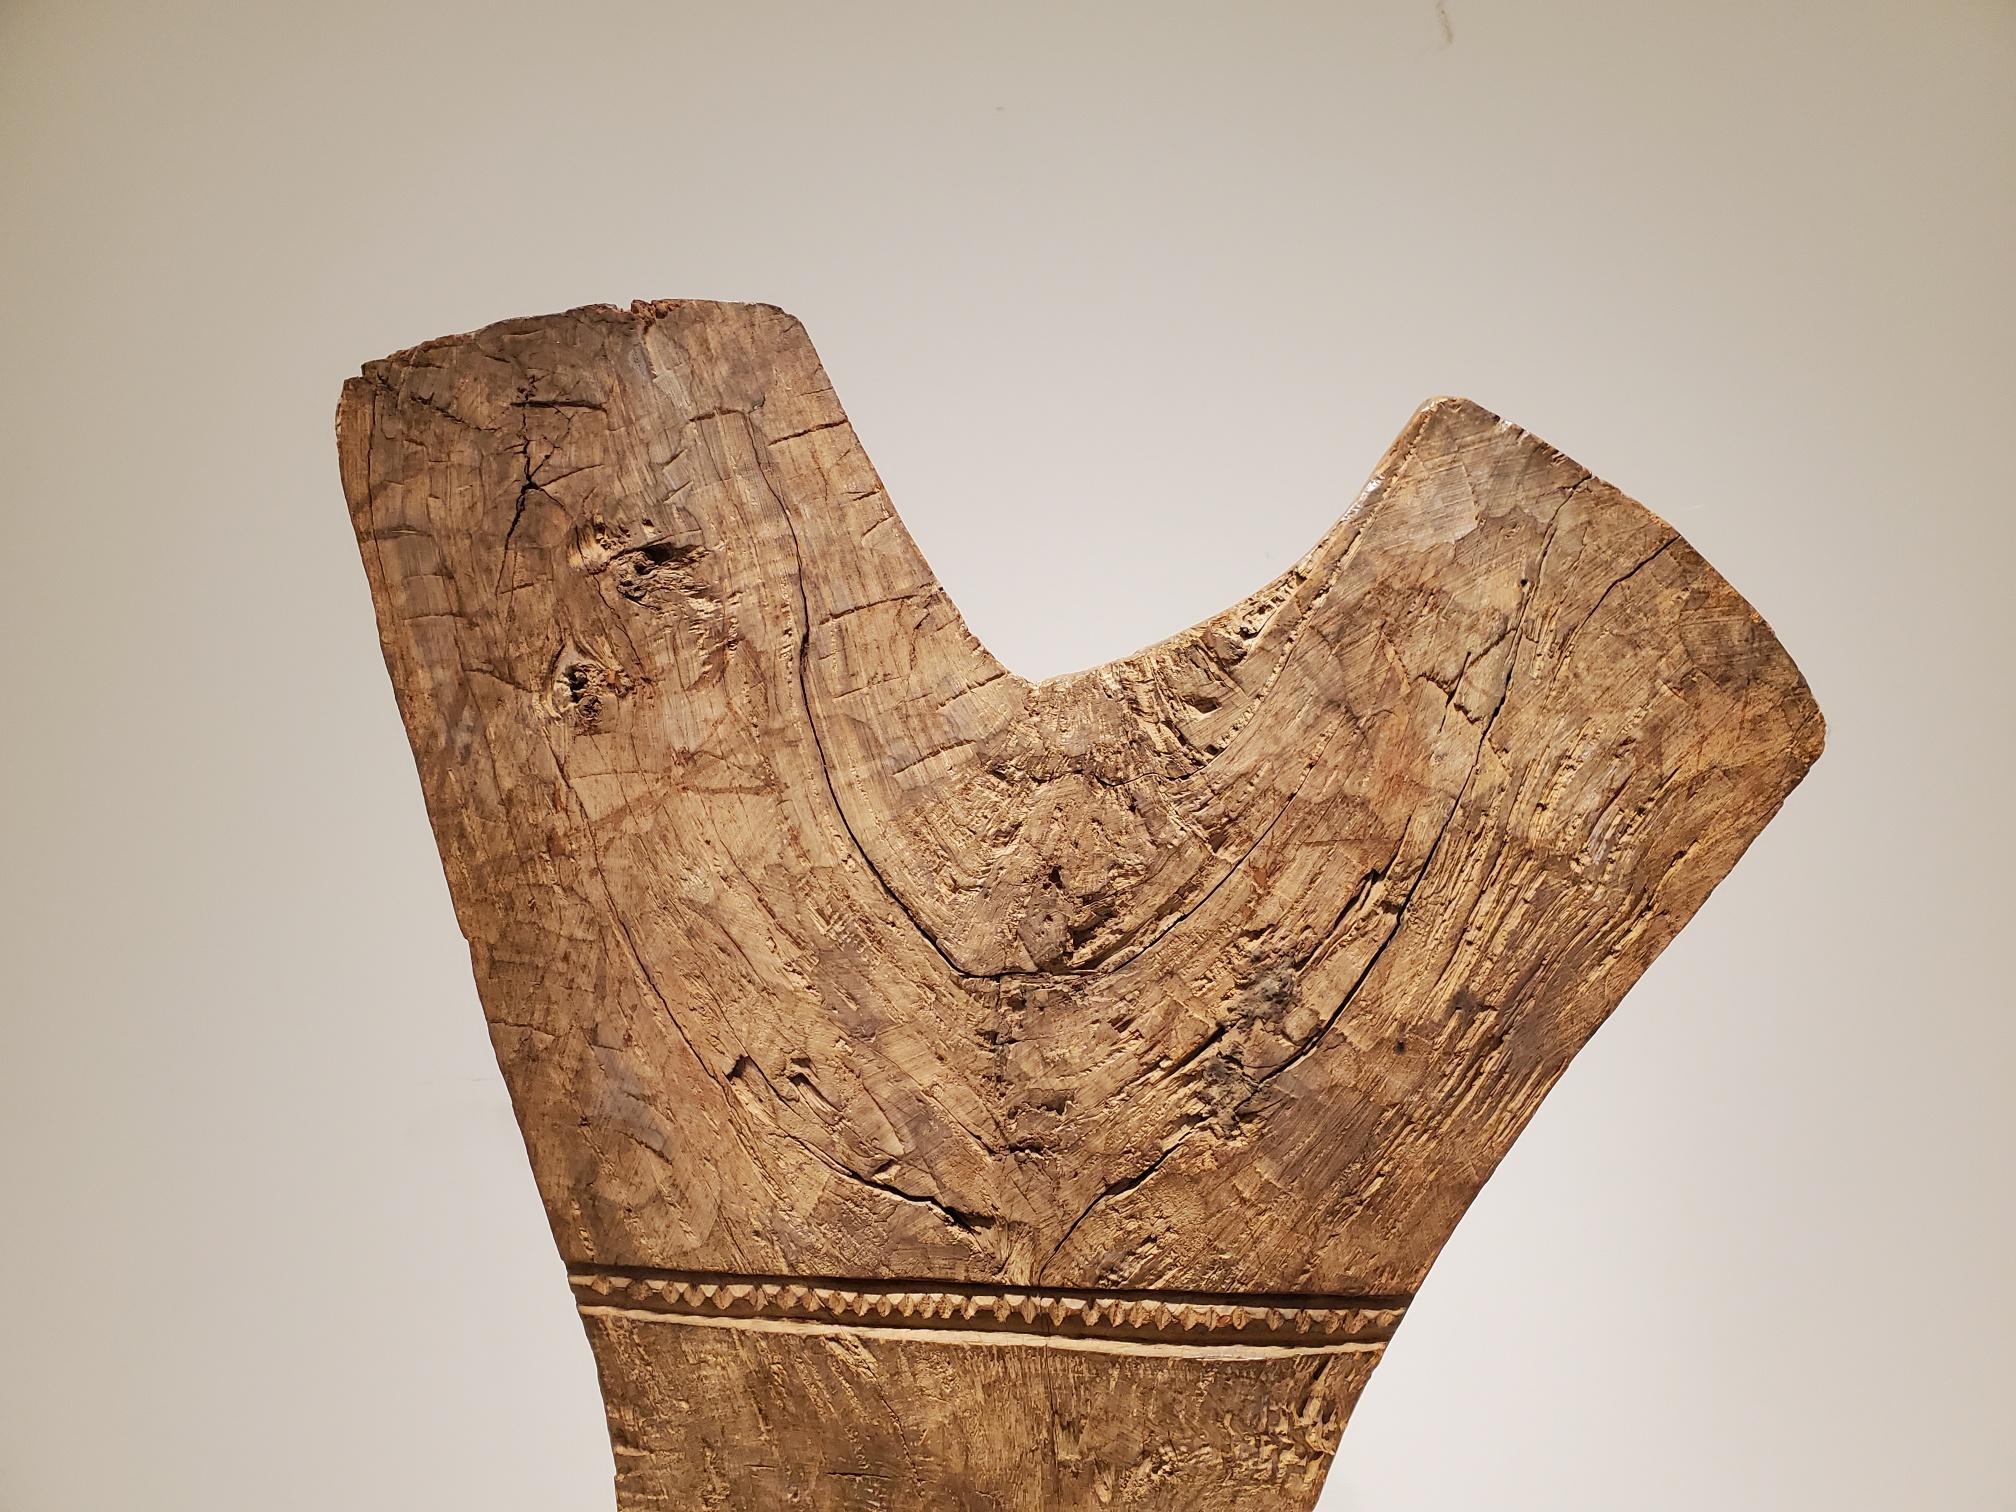 Importante et grande borne en Y Dogon antique en bois sculpté à la main, provenant du Mali, Afrique, représentant de larges seins voluptueux au-dessus d'un masque géométrique Kanaga symbolisant la création du monde, dansé lors de cérémonies